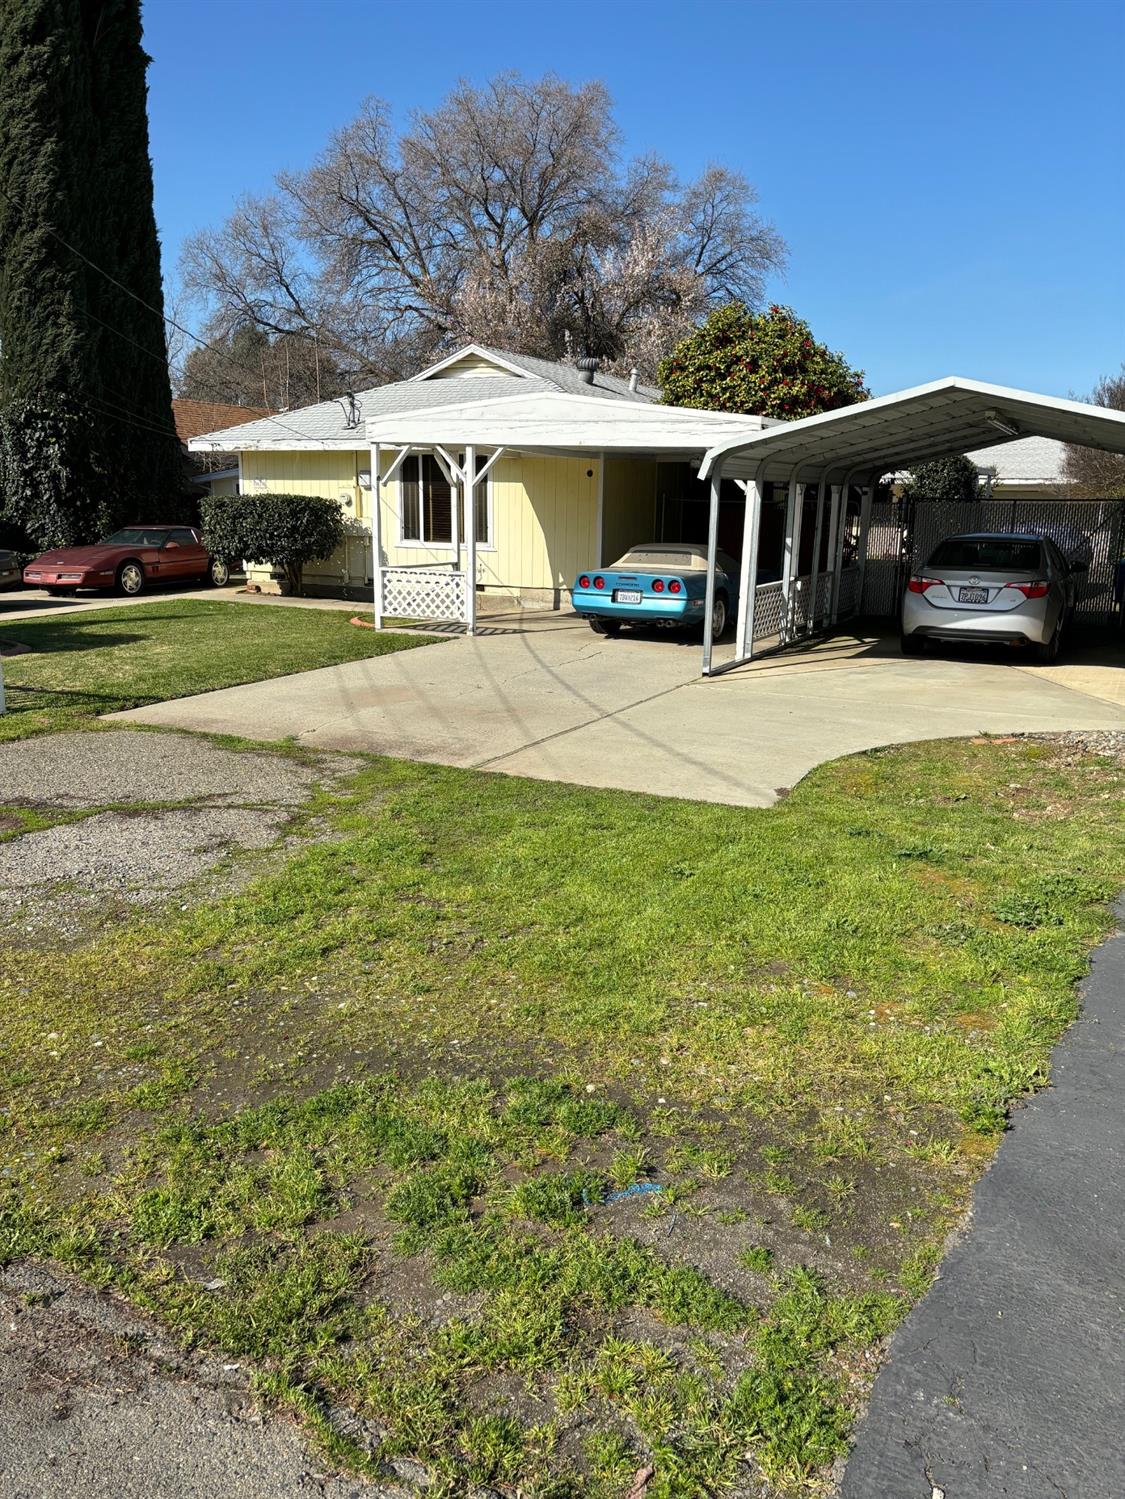 Photo of 1059 Laurel Ave in Olivehurst, CA